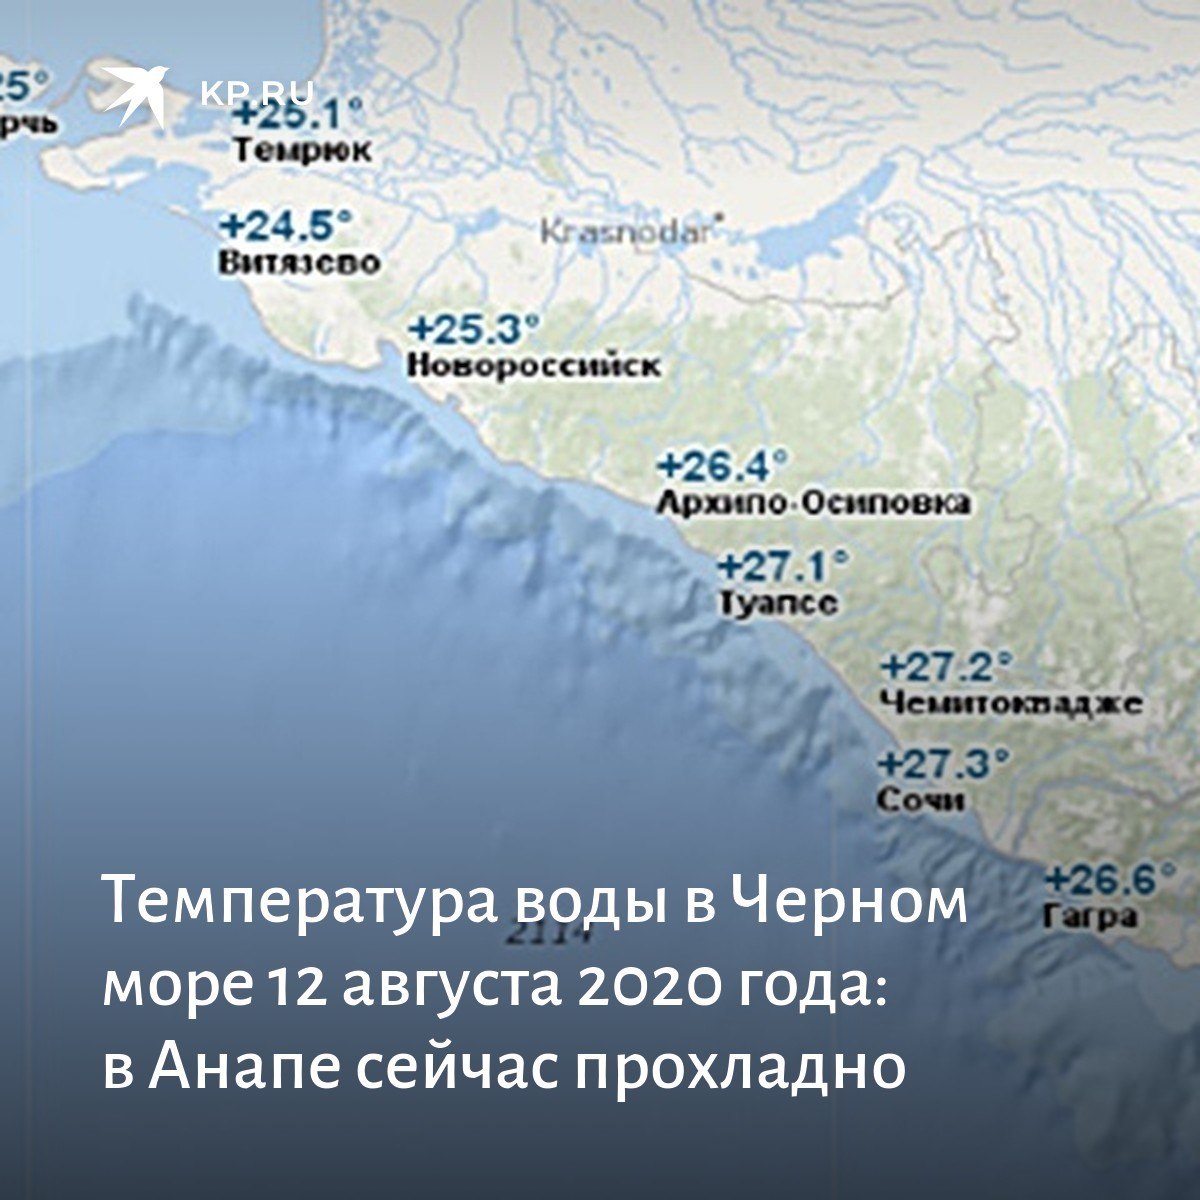 Морская вода градус. Черное море Сочи. Температурная карта Черноморского побережья. Туапсе побережье черного моря. Глубина моря в районе Сочи.